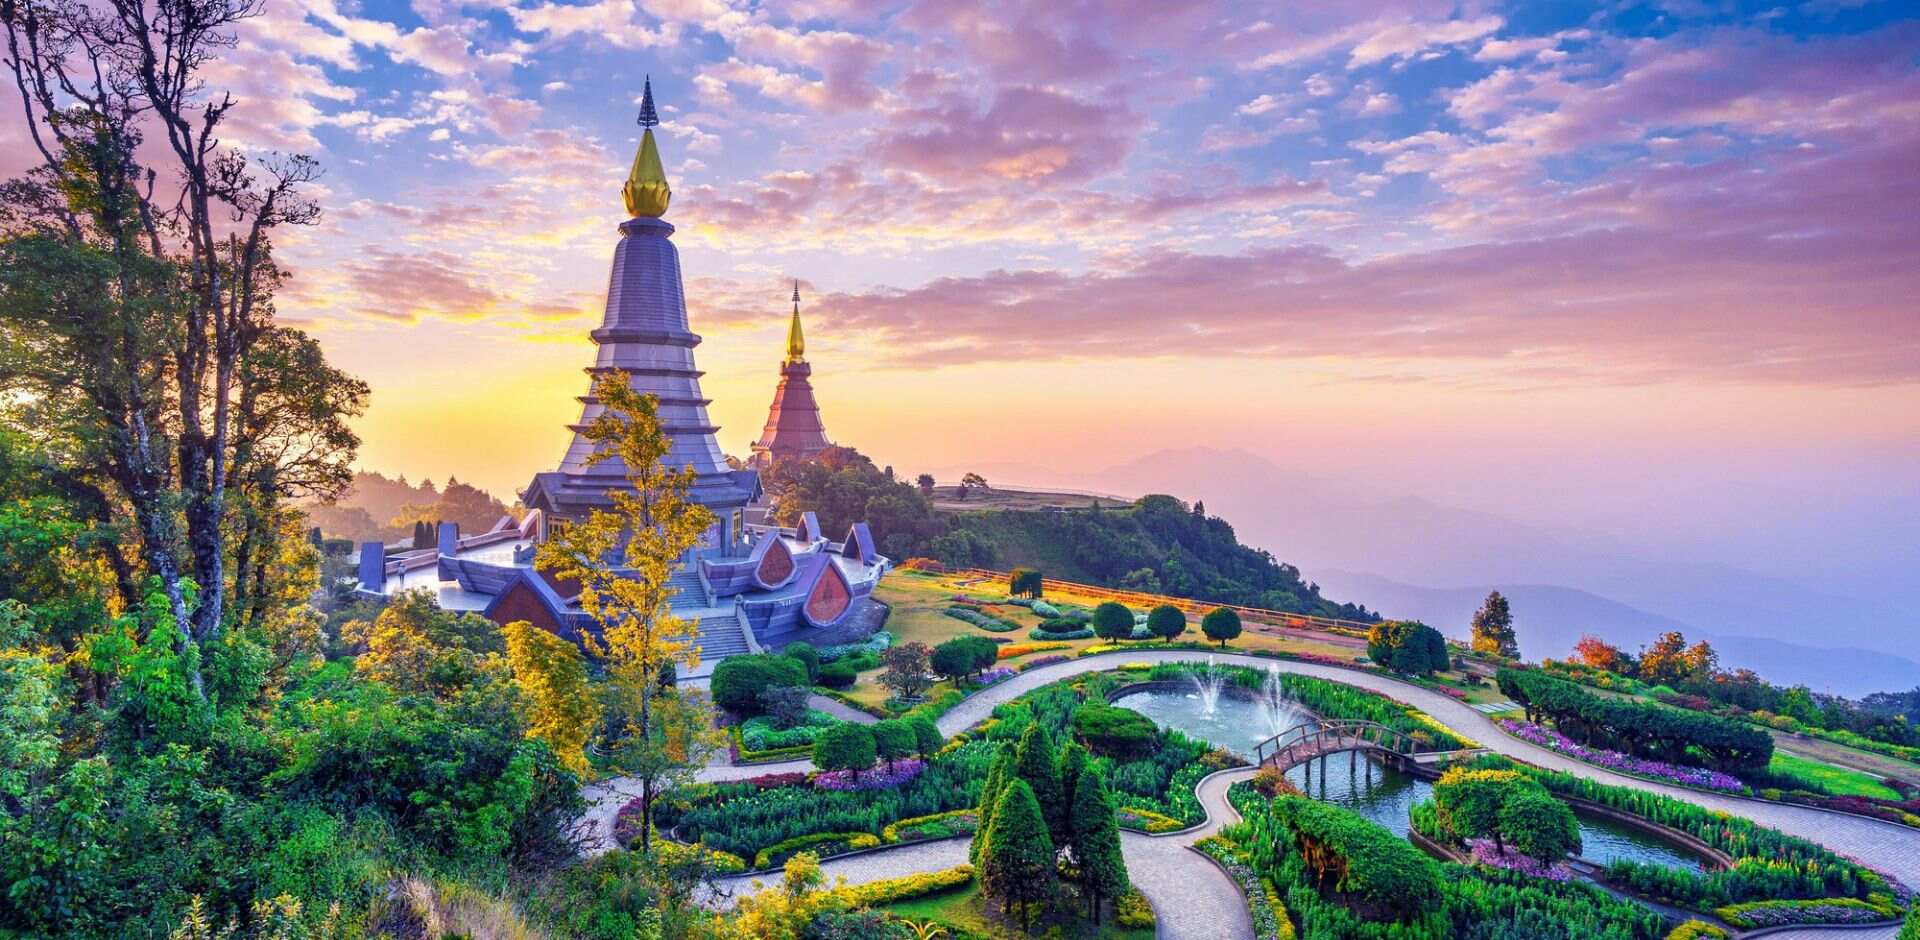 Explore Chiang Mai